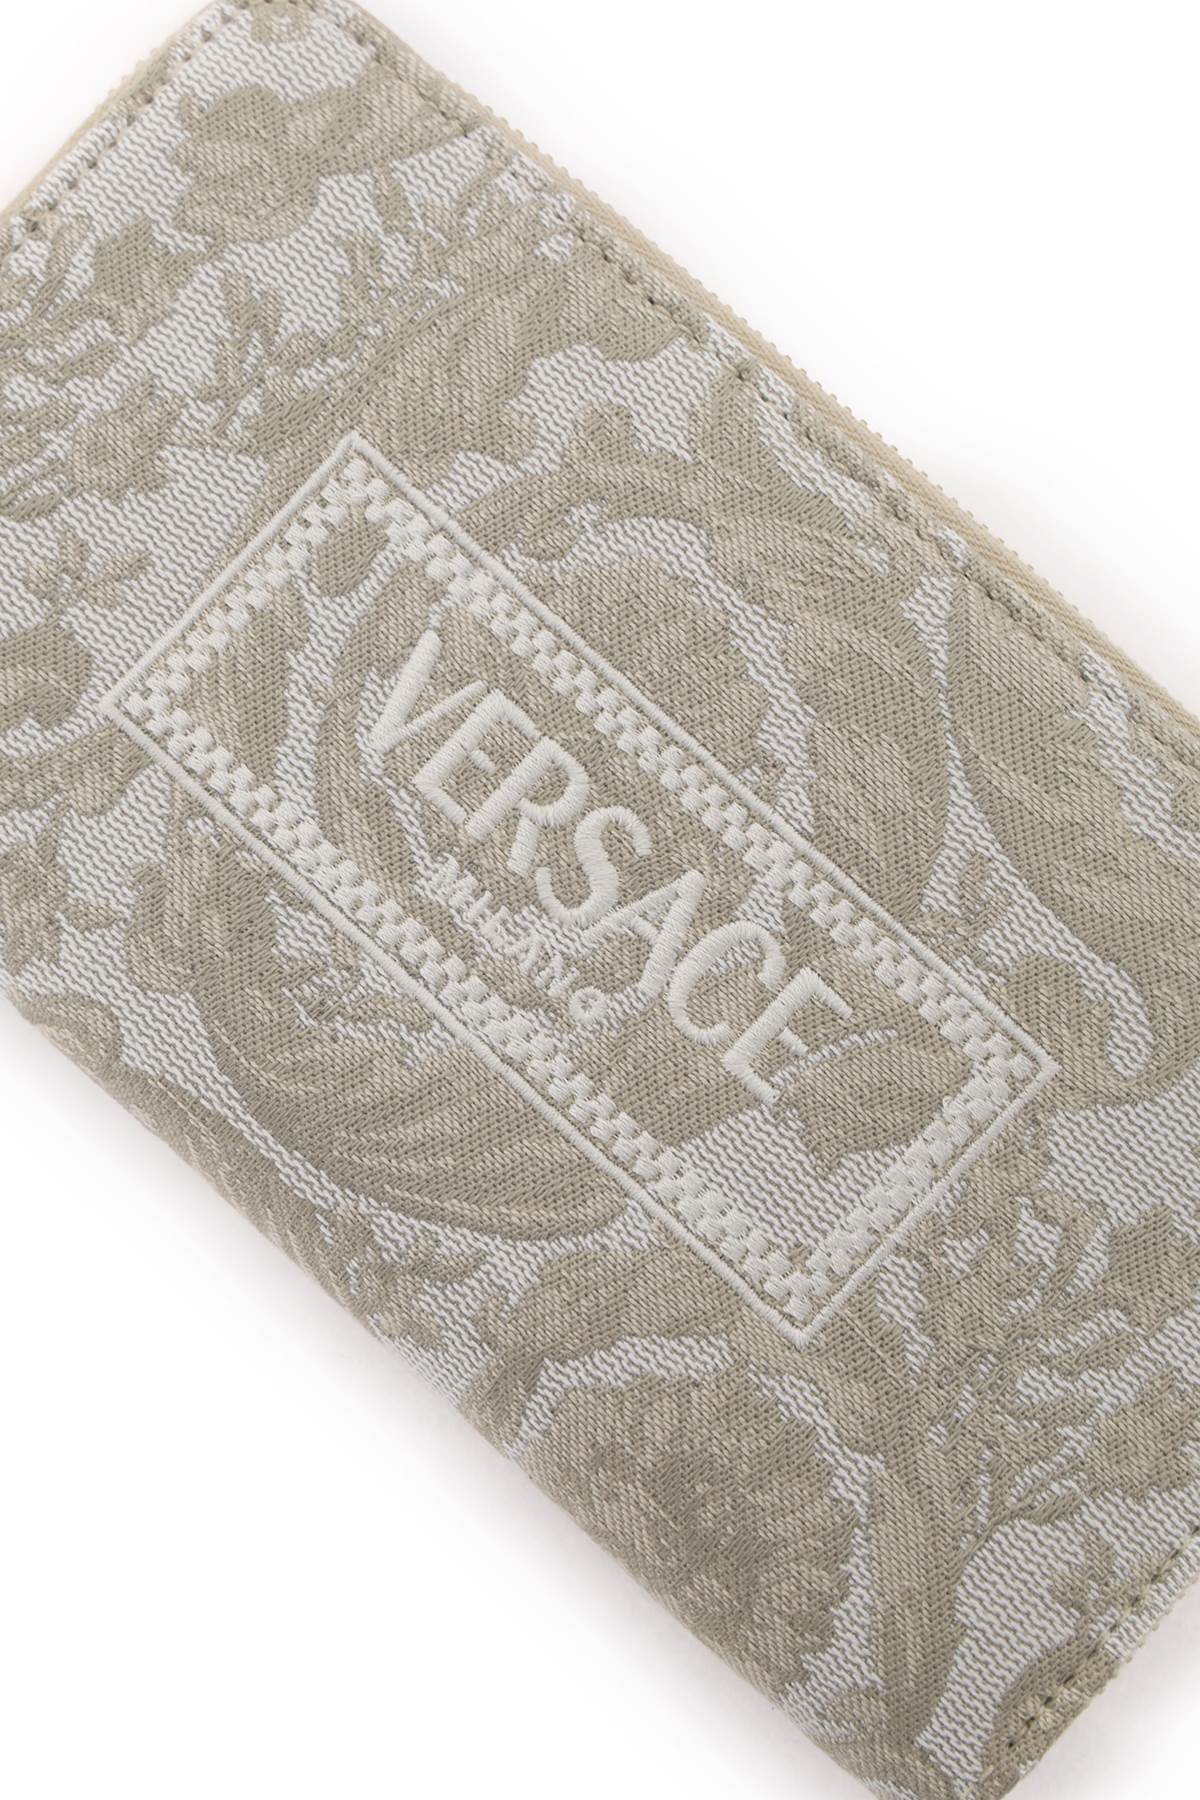 Versace Versace barocco long wallet